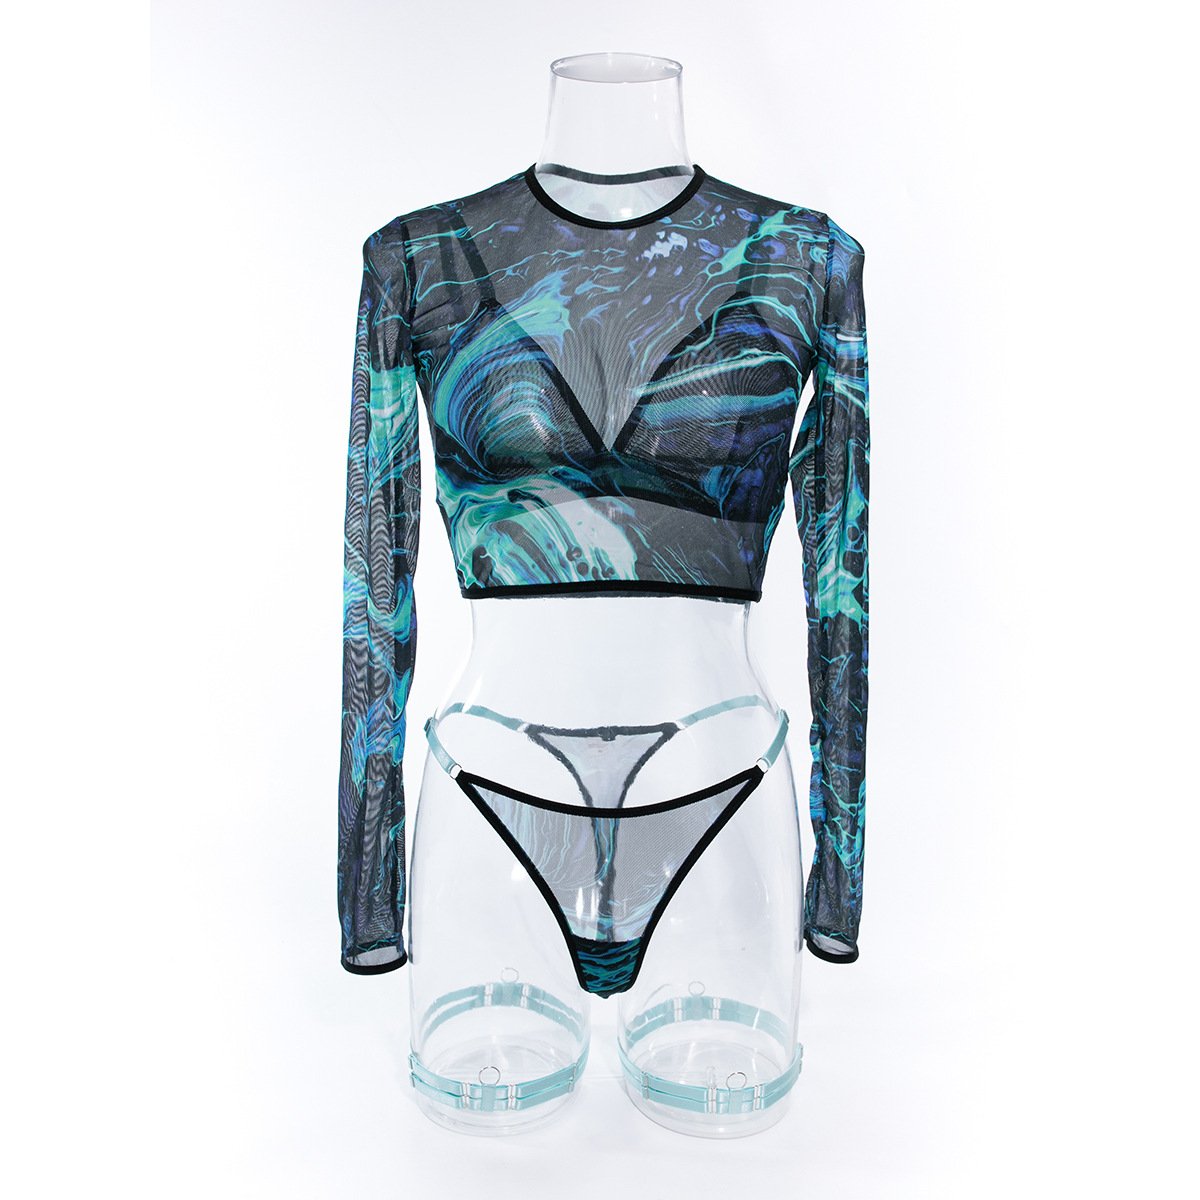 Long sleeve print mesh garter 3 piece lingerie set